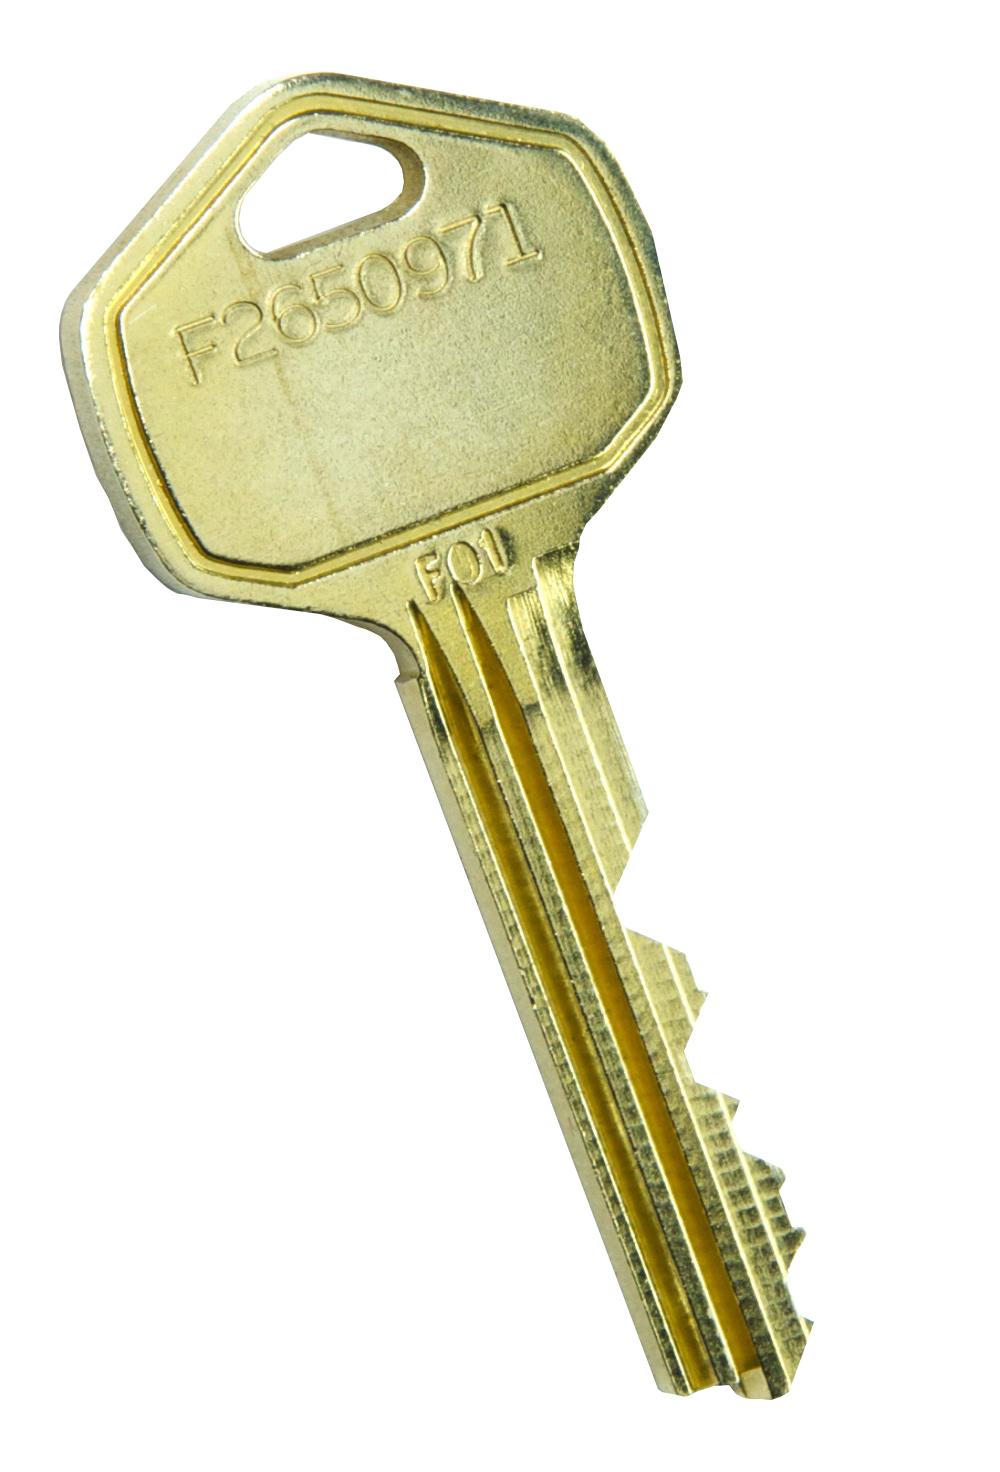 Keys Image PNG Image